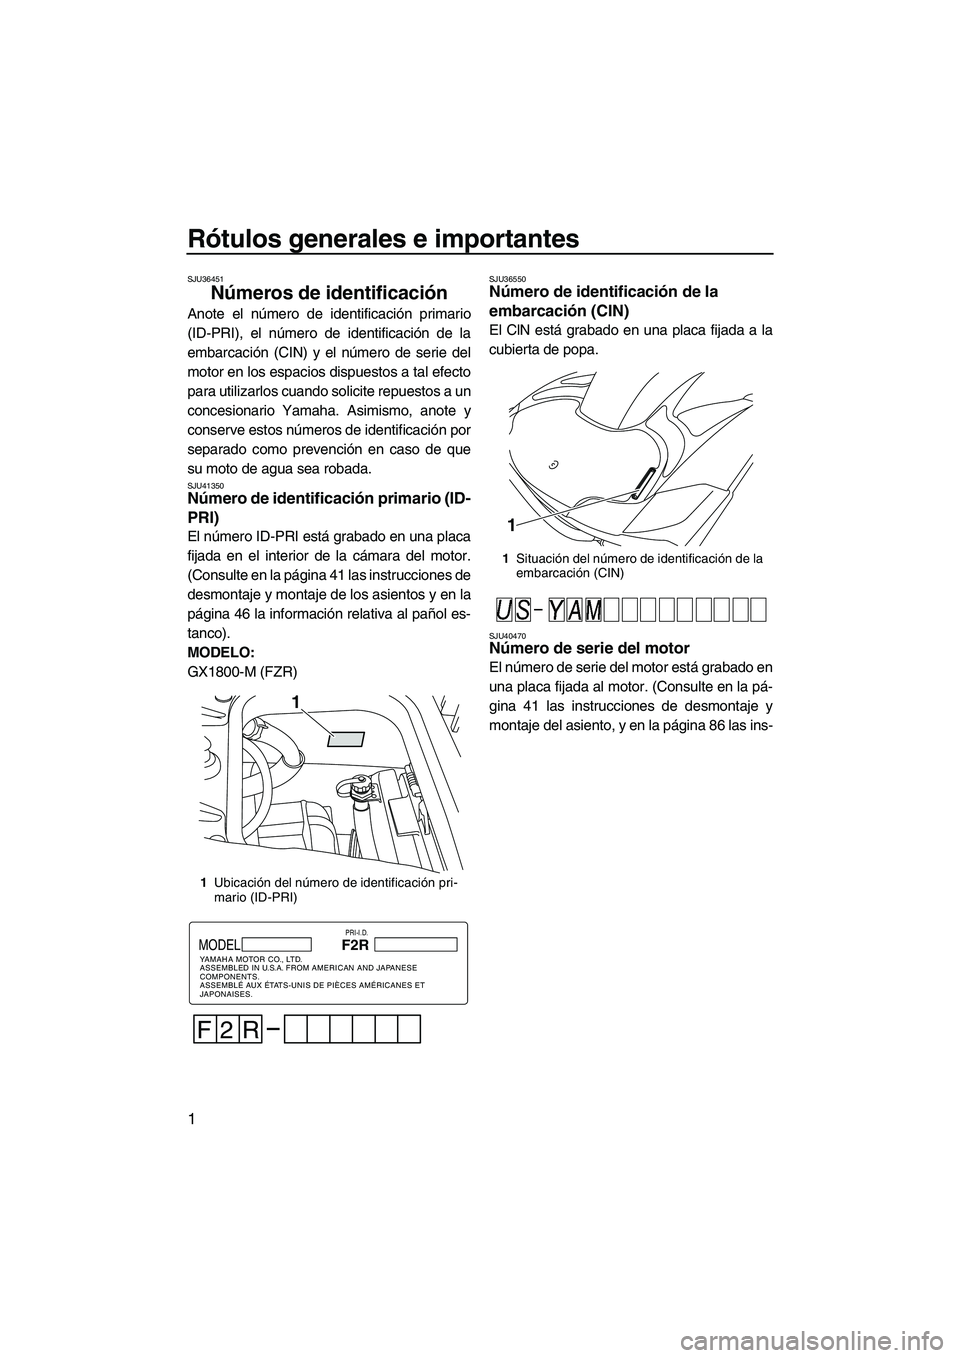 YAMAHA FZR 2013  Manuale de Empleo (in Spanish) Rótulos generales e importantes
1
SJU36451
Números de identificación 
Anote el número de identificación primario
(ID-PRI), el número de identificación de la
embarcación (CIN) y el número de s